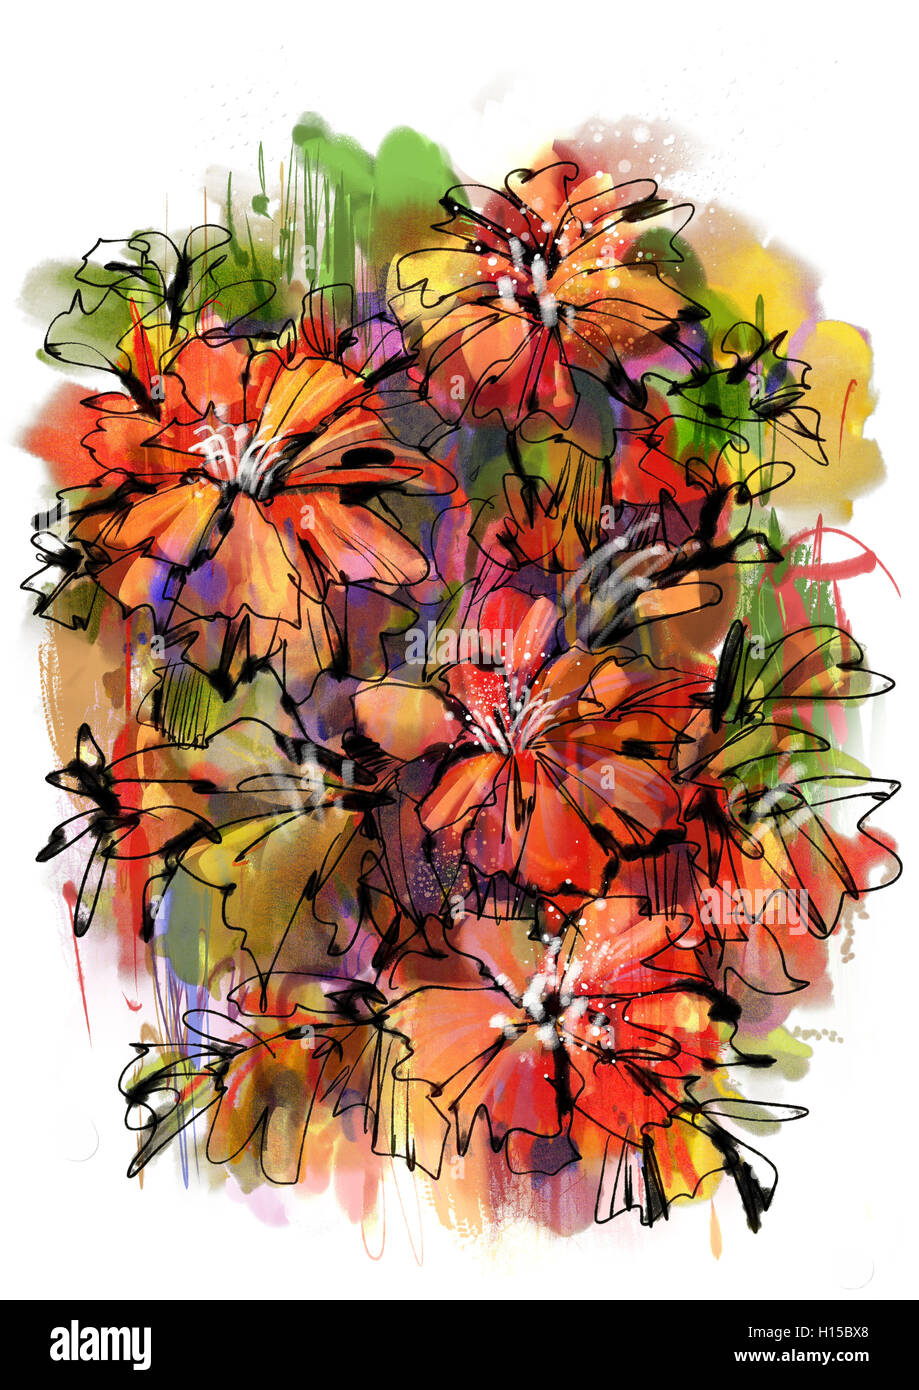 De la peinture abstraite colorée avec des fleurs de style aquarelle Banque D'Images